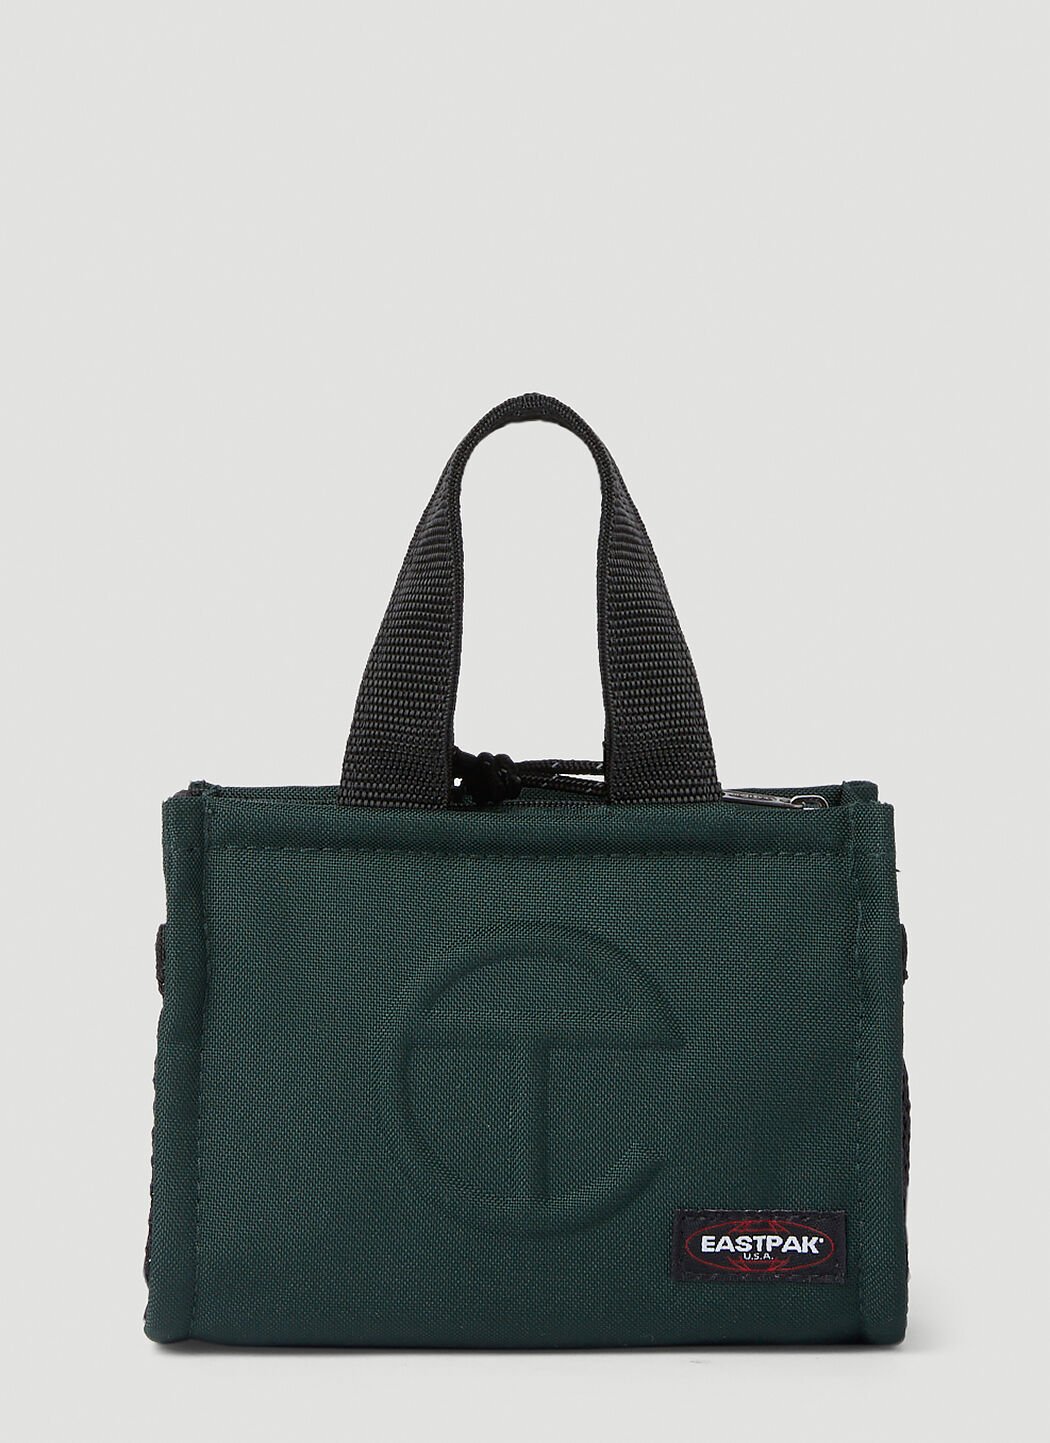 Eastpak x Telfar Shopper Small Crossbody Bag Black est0347001